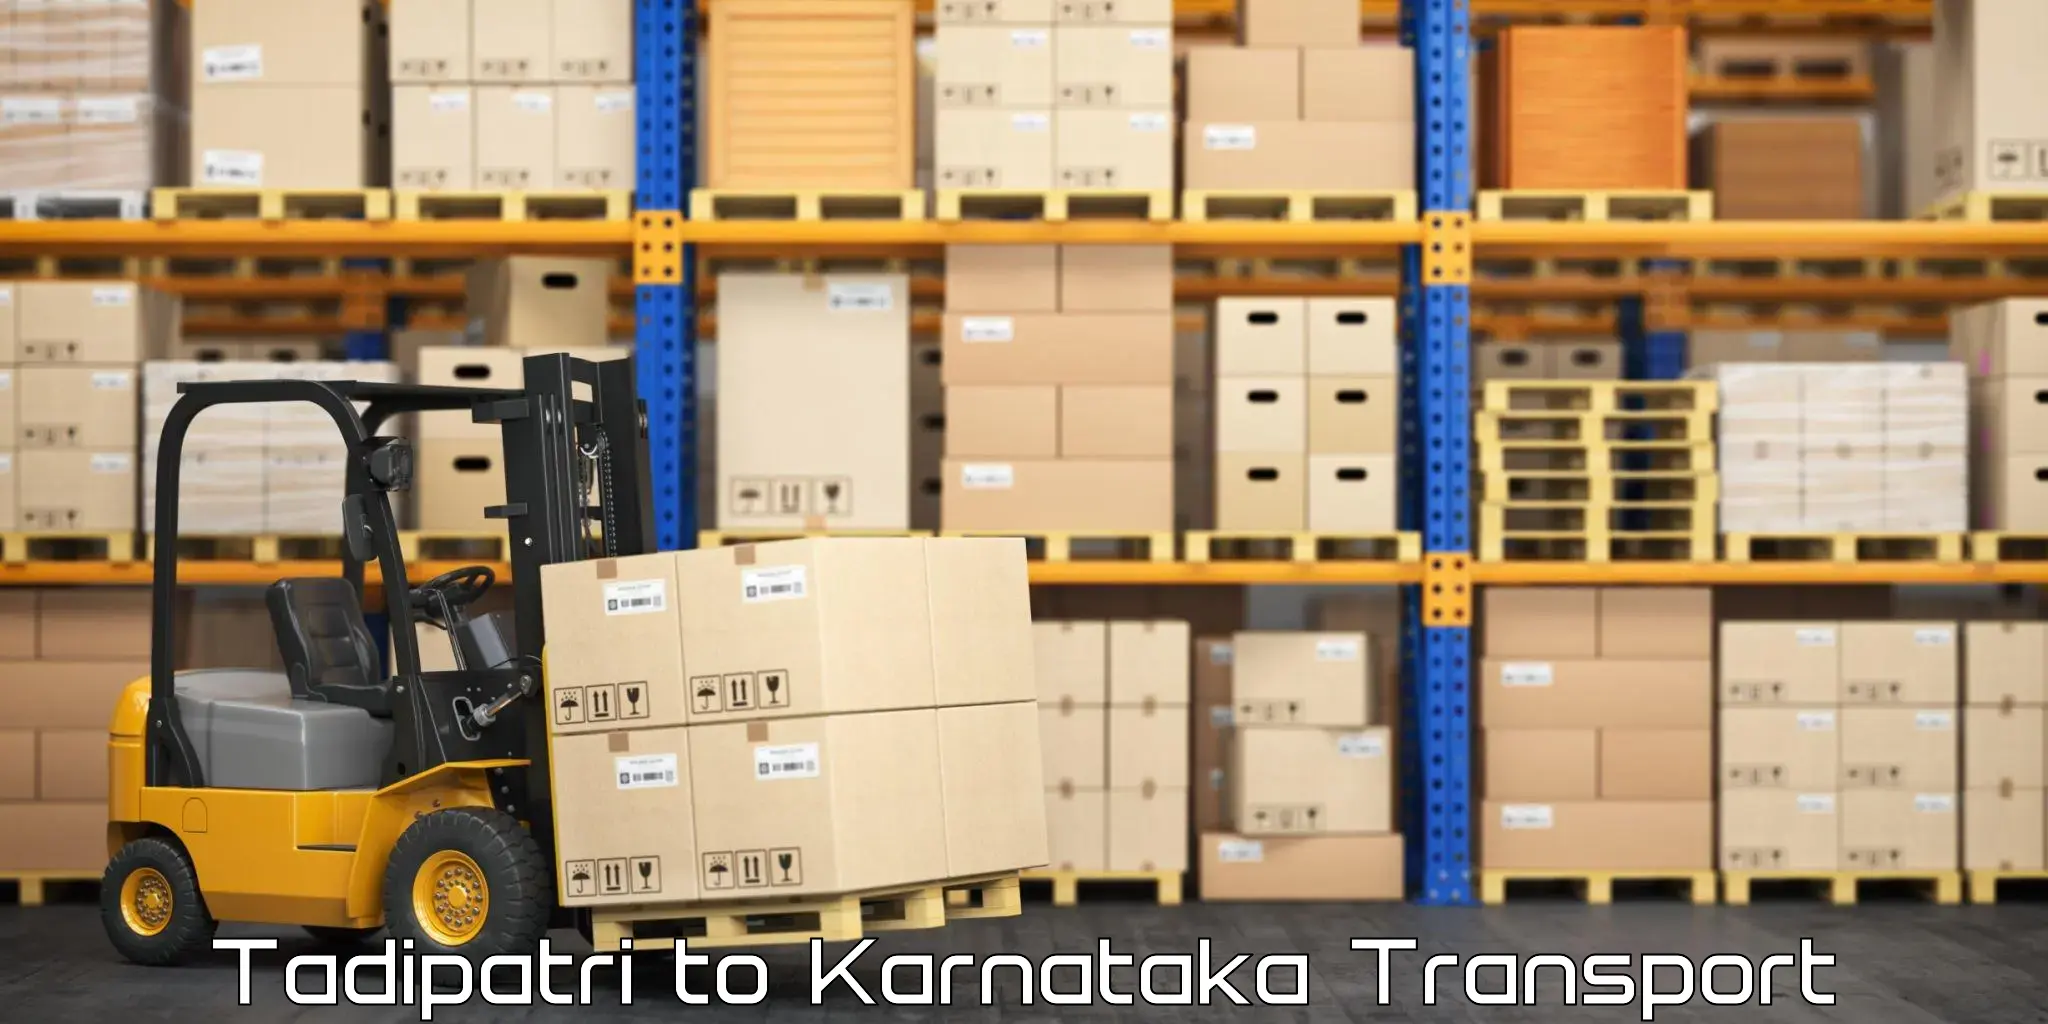 Cargo transportation services Tadipatri to Karkala